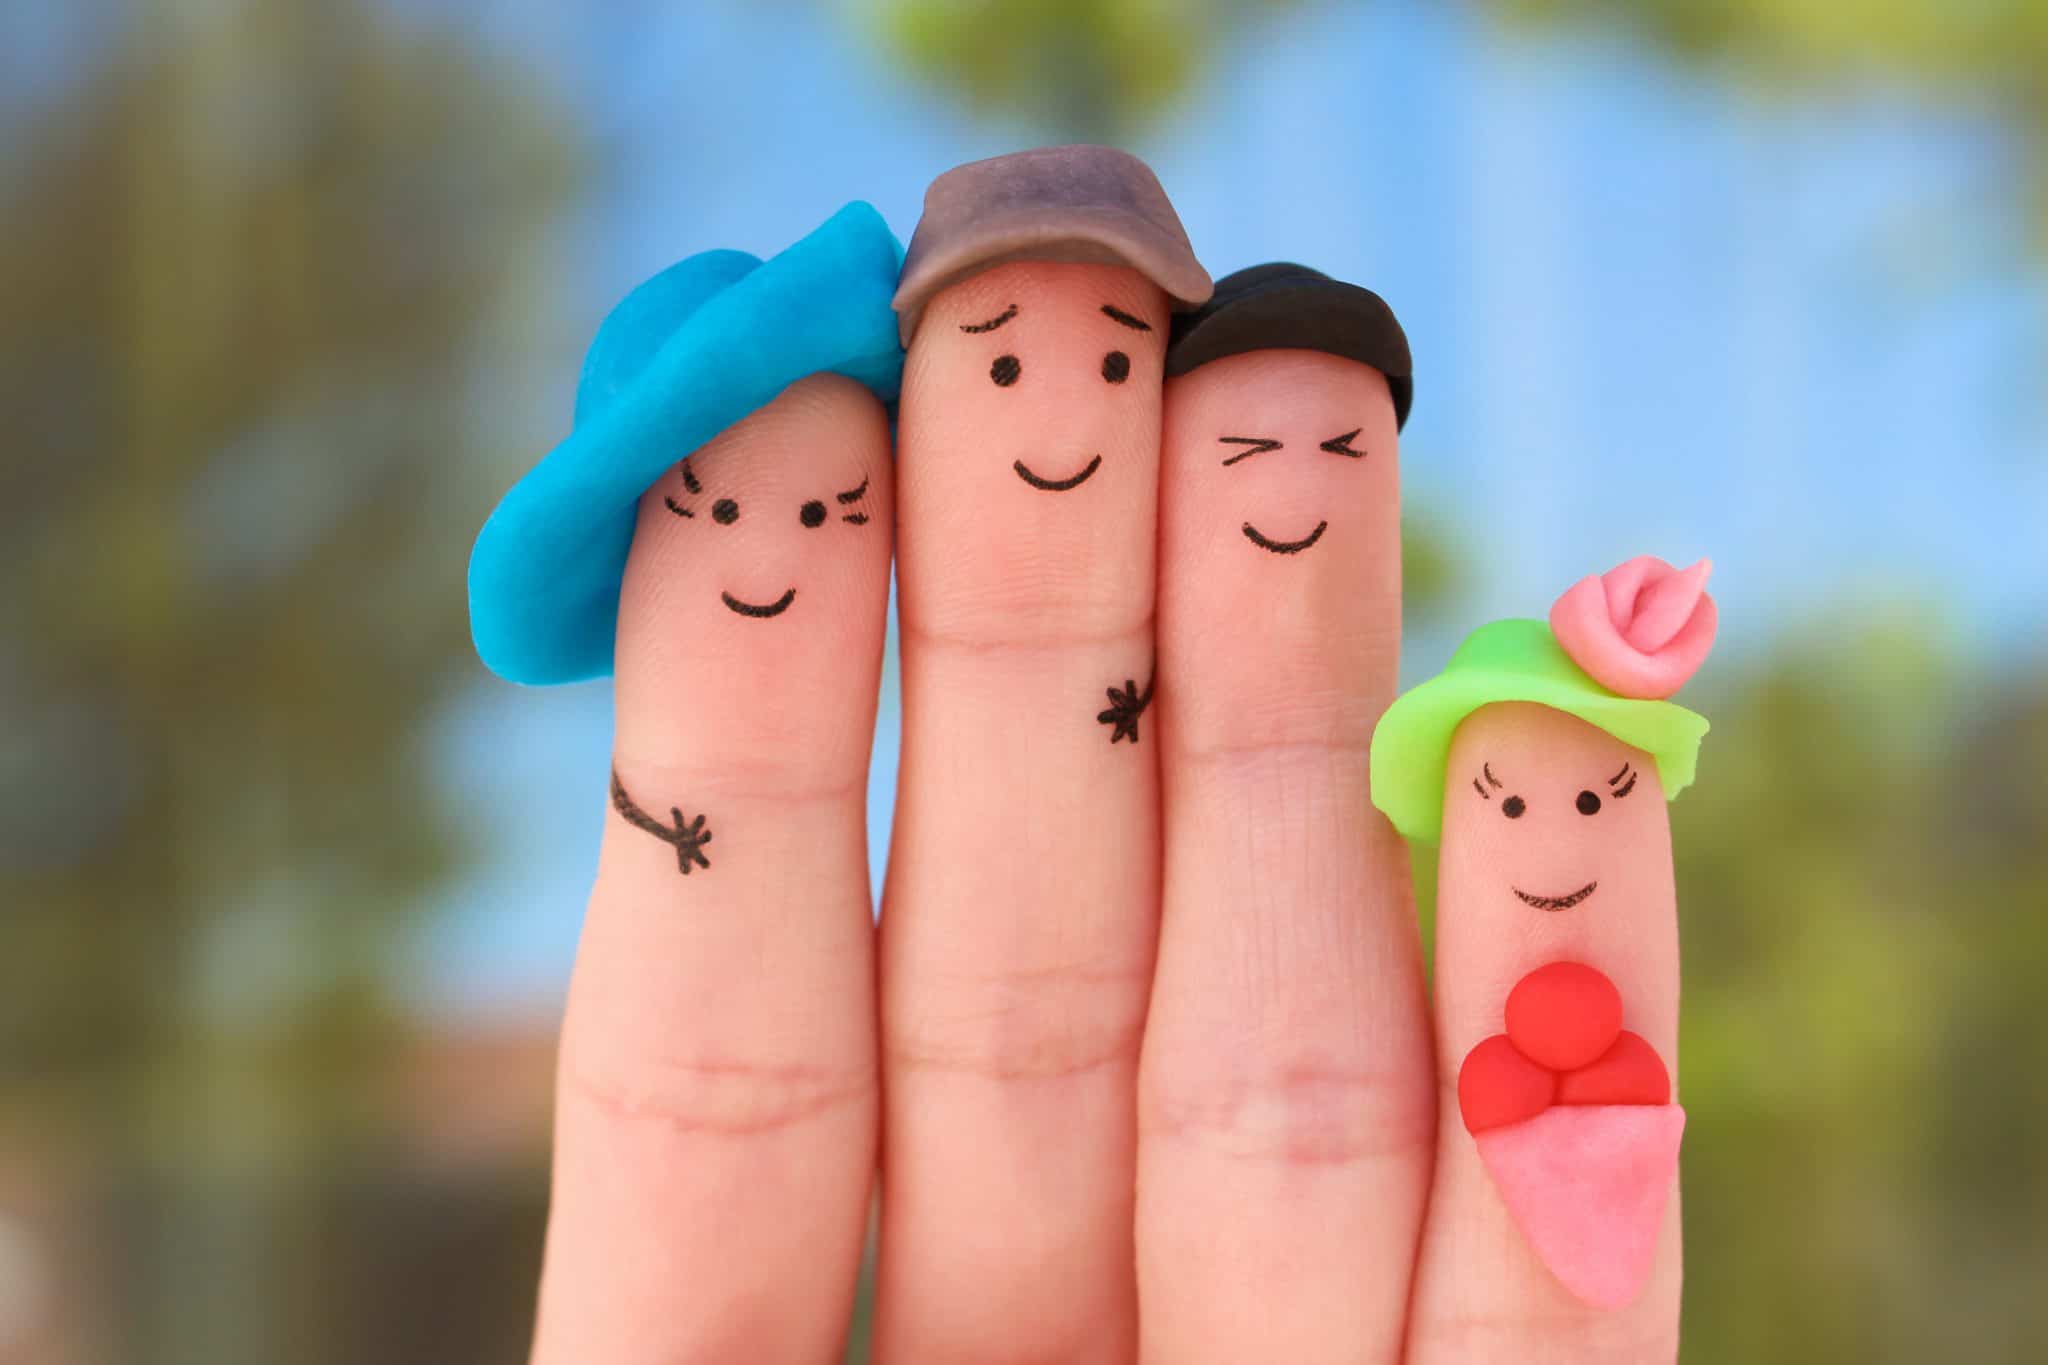 אצבעות מצוירות כמשפחה